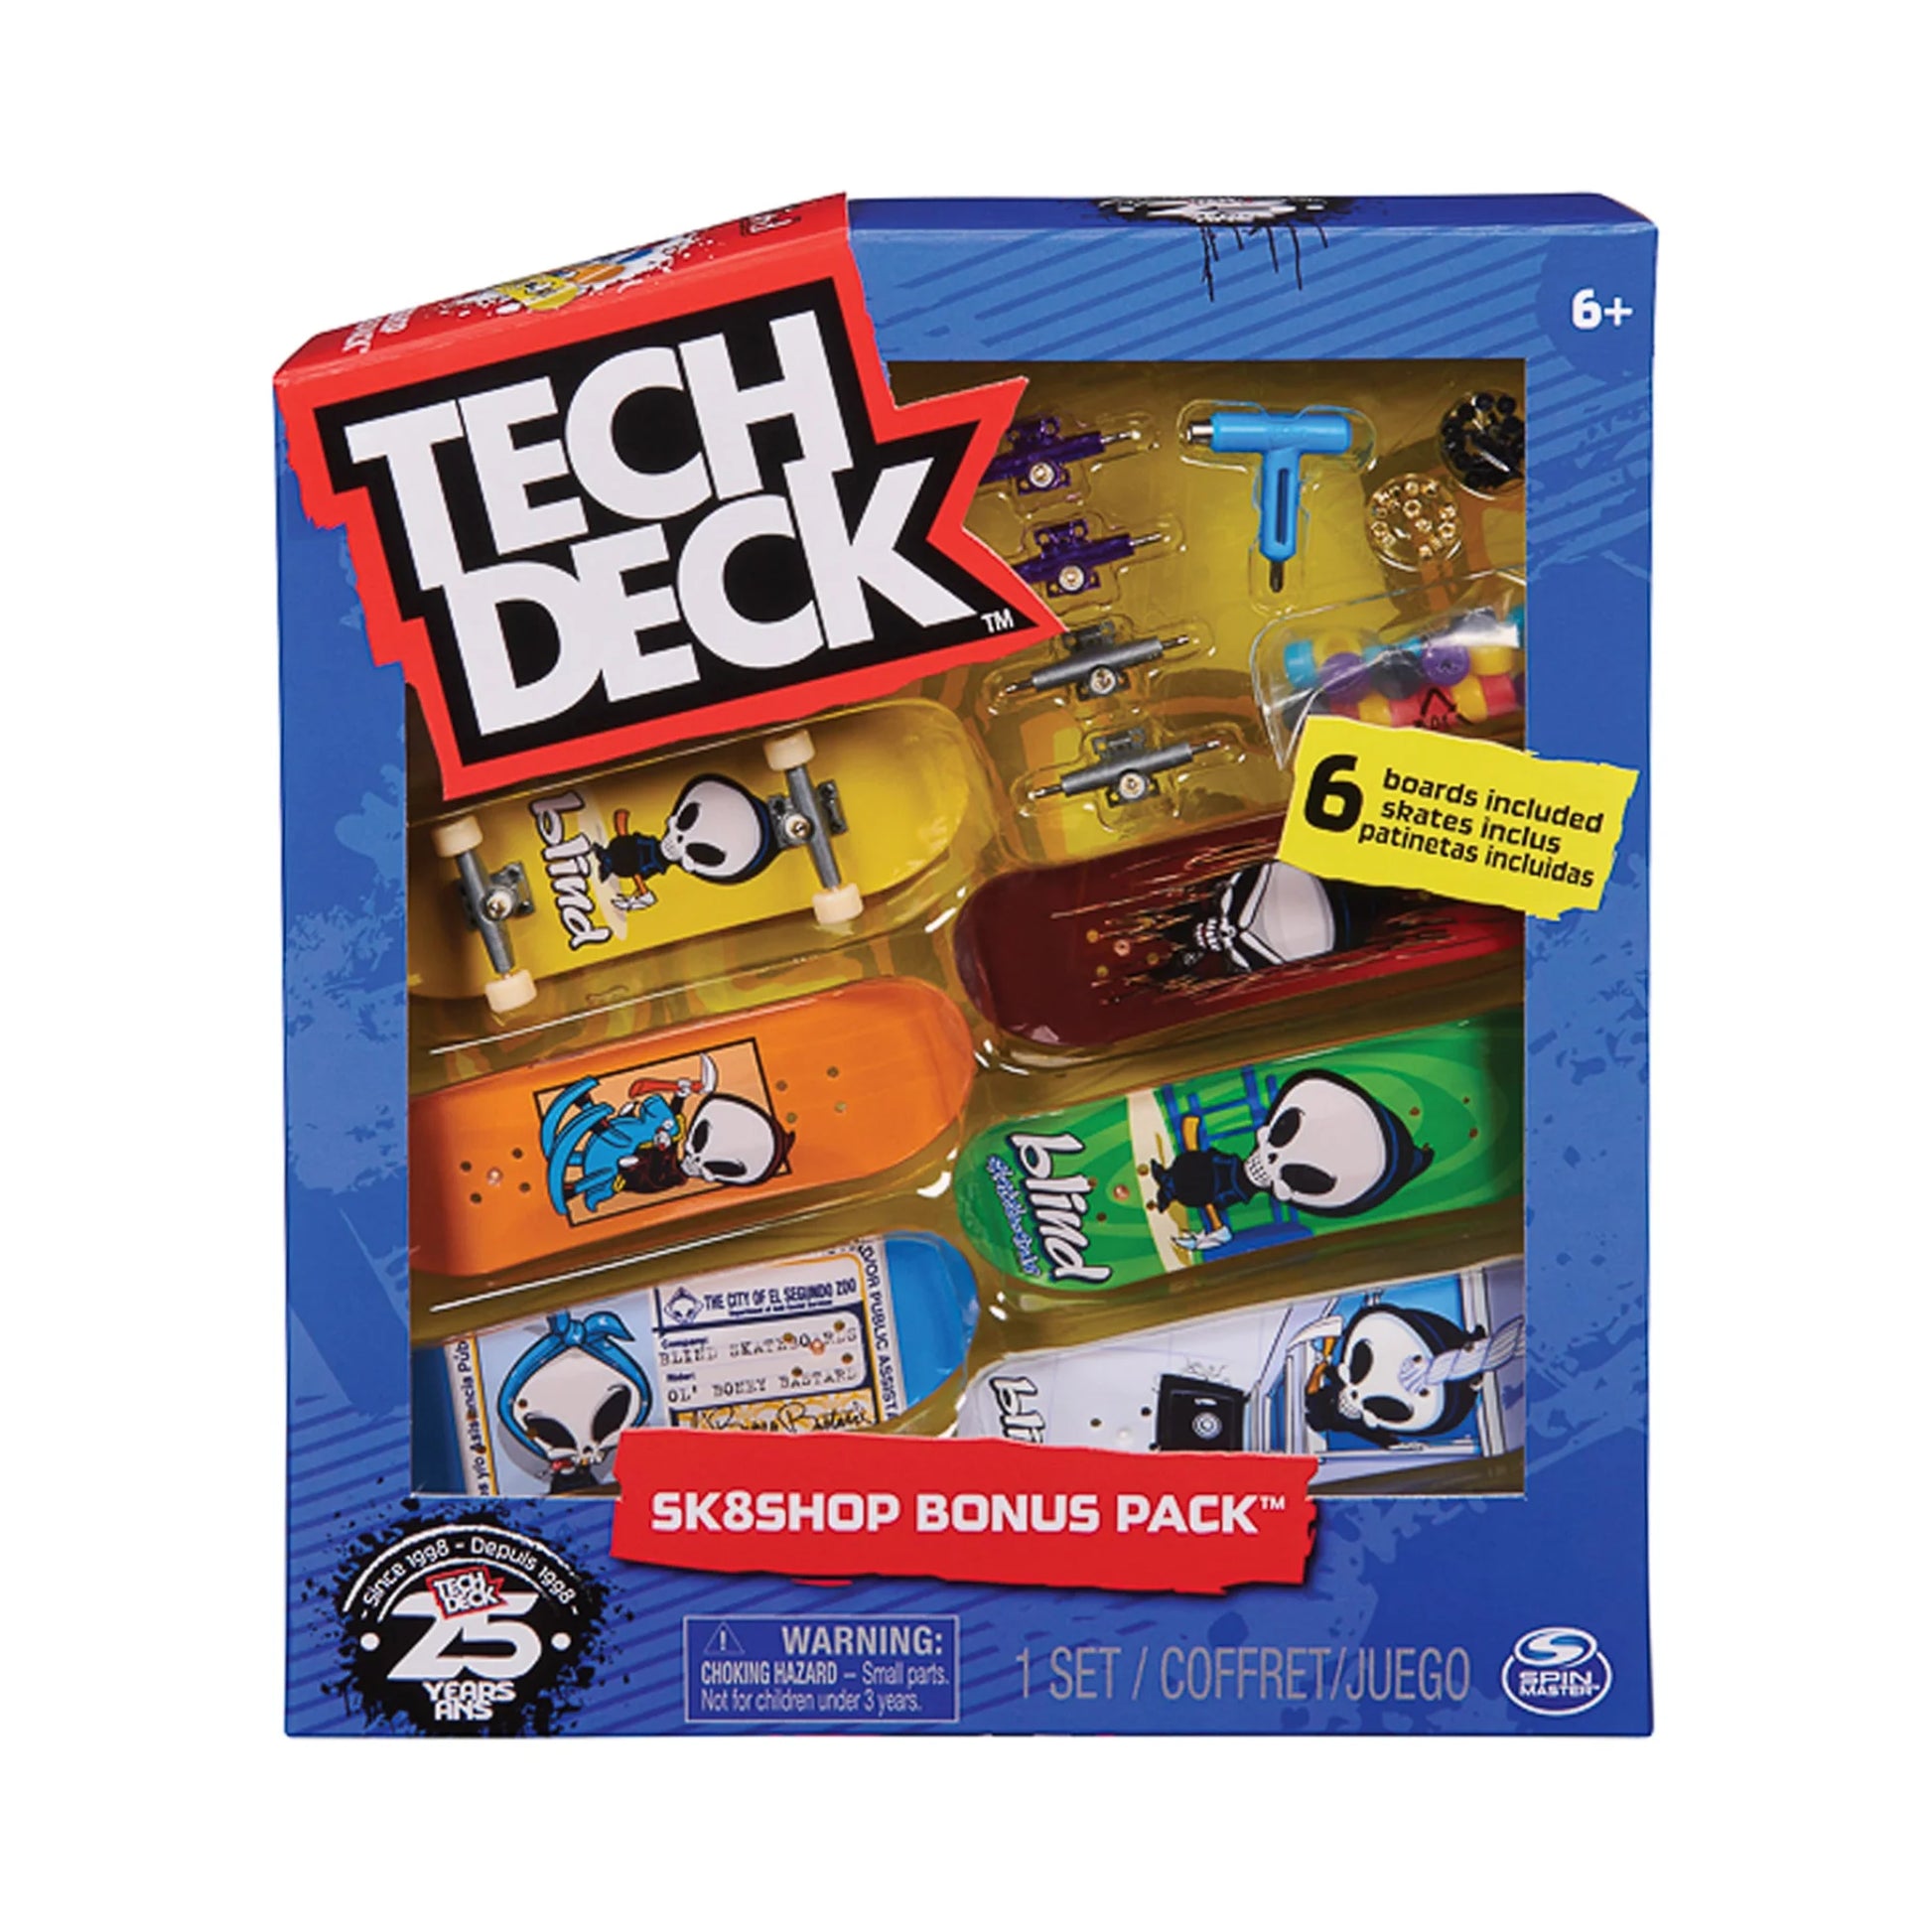 Tech Deck - Sk8shop Bonus Pack - Blind Skateboards - Prime Delux Store